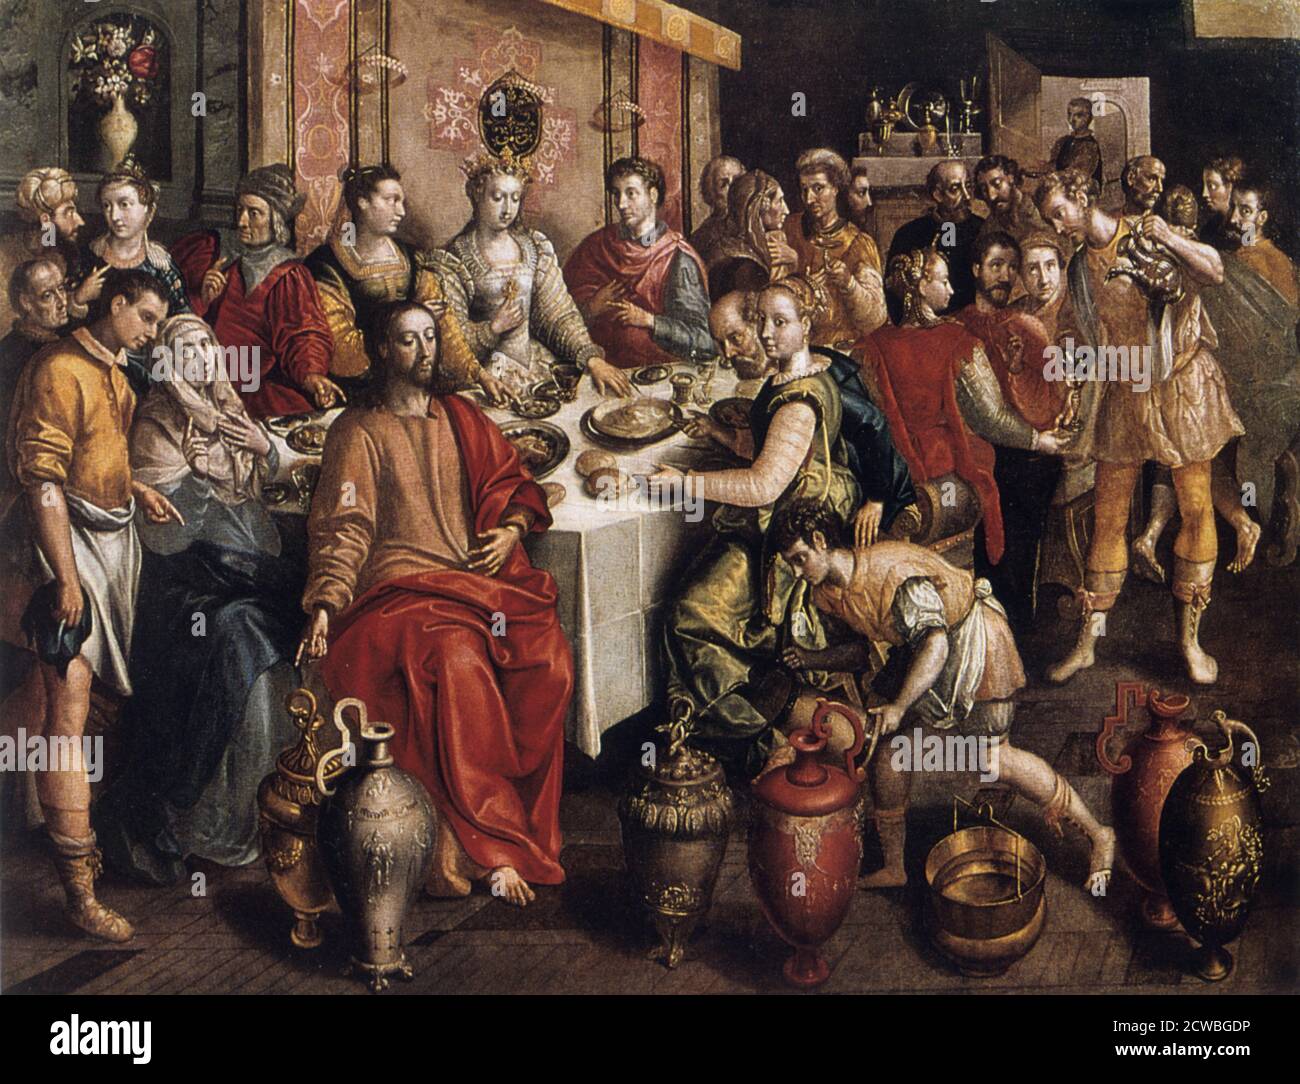 Il matrimonio a Cana' di Martin de Vos, 1596-1597. Il dipinto mostra il primo miracolo di Cristo. Quando il vino si esaurì in un matrimonio in cui Gesù e sua madre erano ospiti, cambiò l'acqua nel vino più raffinato, un tema perfetto per l'altare dei Tavern-Keepers nella Cattedrale di Anversa. Gesù e sua madre si distinguono per i loro semplici abiti 'biblici'. Gli ospiti sono sicuri di includere diversi membri senior della Tavern-Keepers' Guild. Dalla collezione del Vrouwekathedraal, Anversa, Belgio. Foto Stock